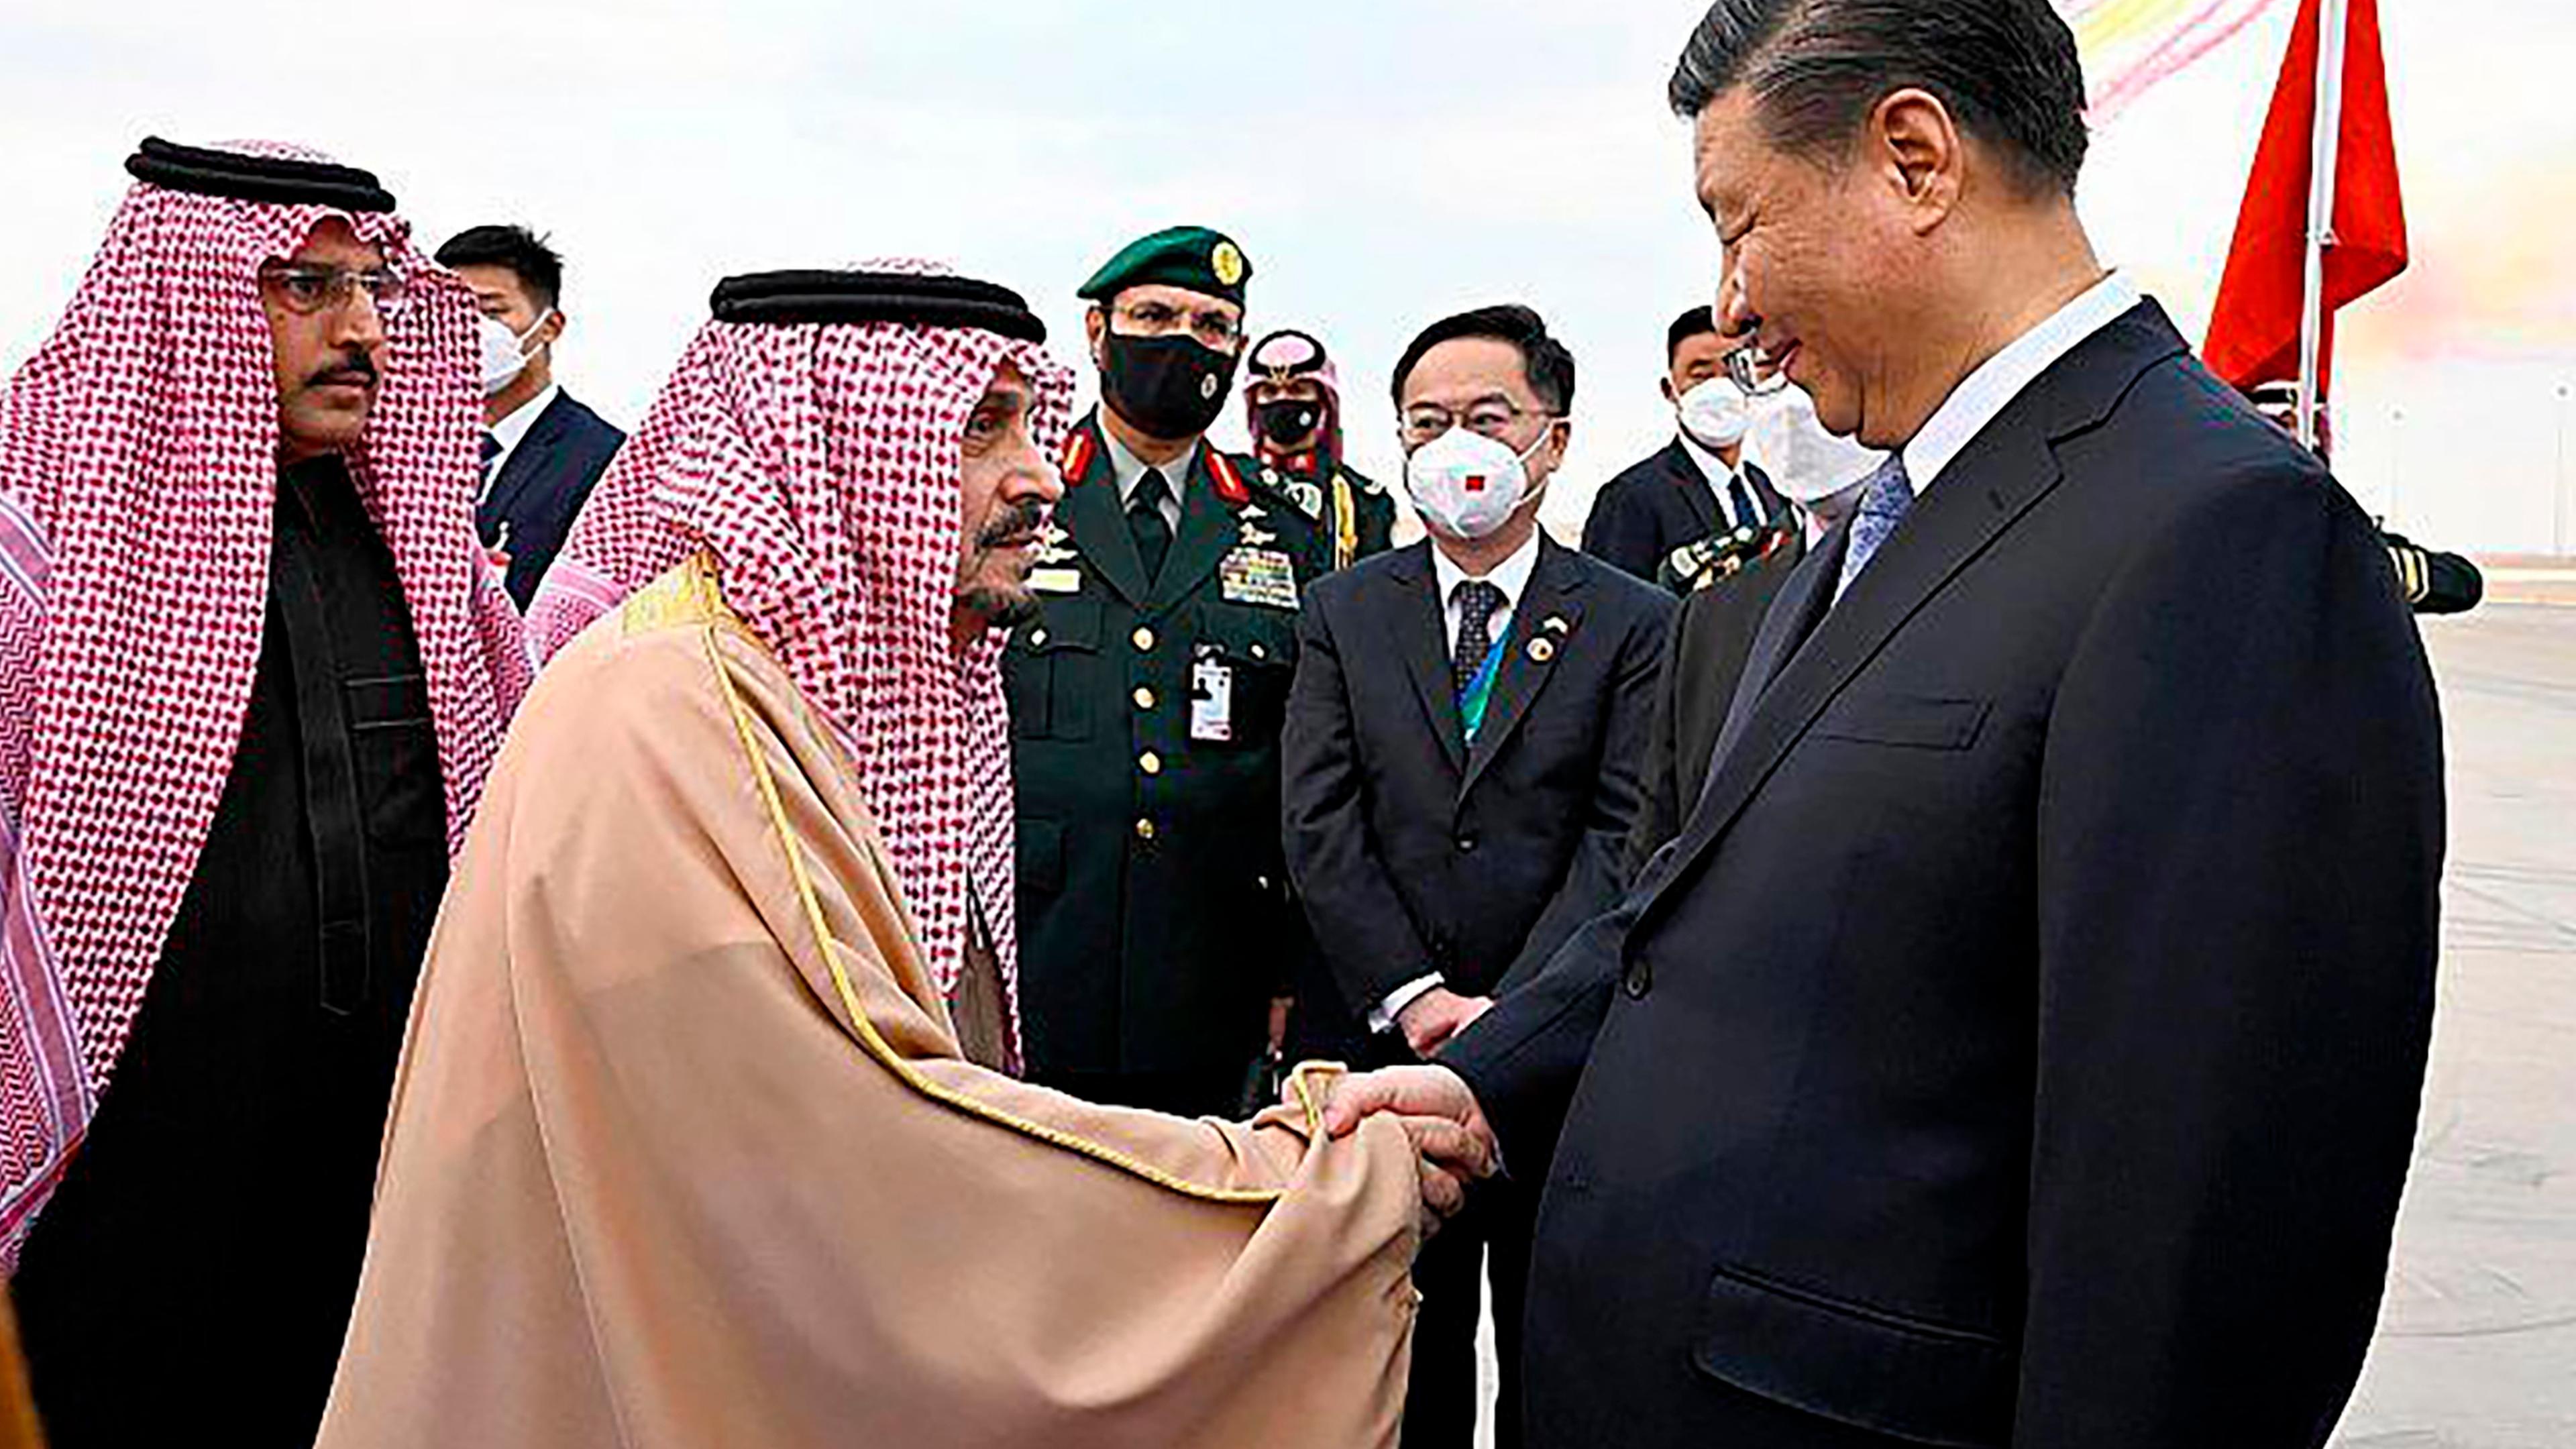 Saudi-Arabien, Riad: Xi Jinping (r), Präsident von China, schüttelt Prinz Faisal bin Bandar Al Saud, Gouverneur von Riad, nach seiner Ankunft die Hand.